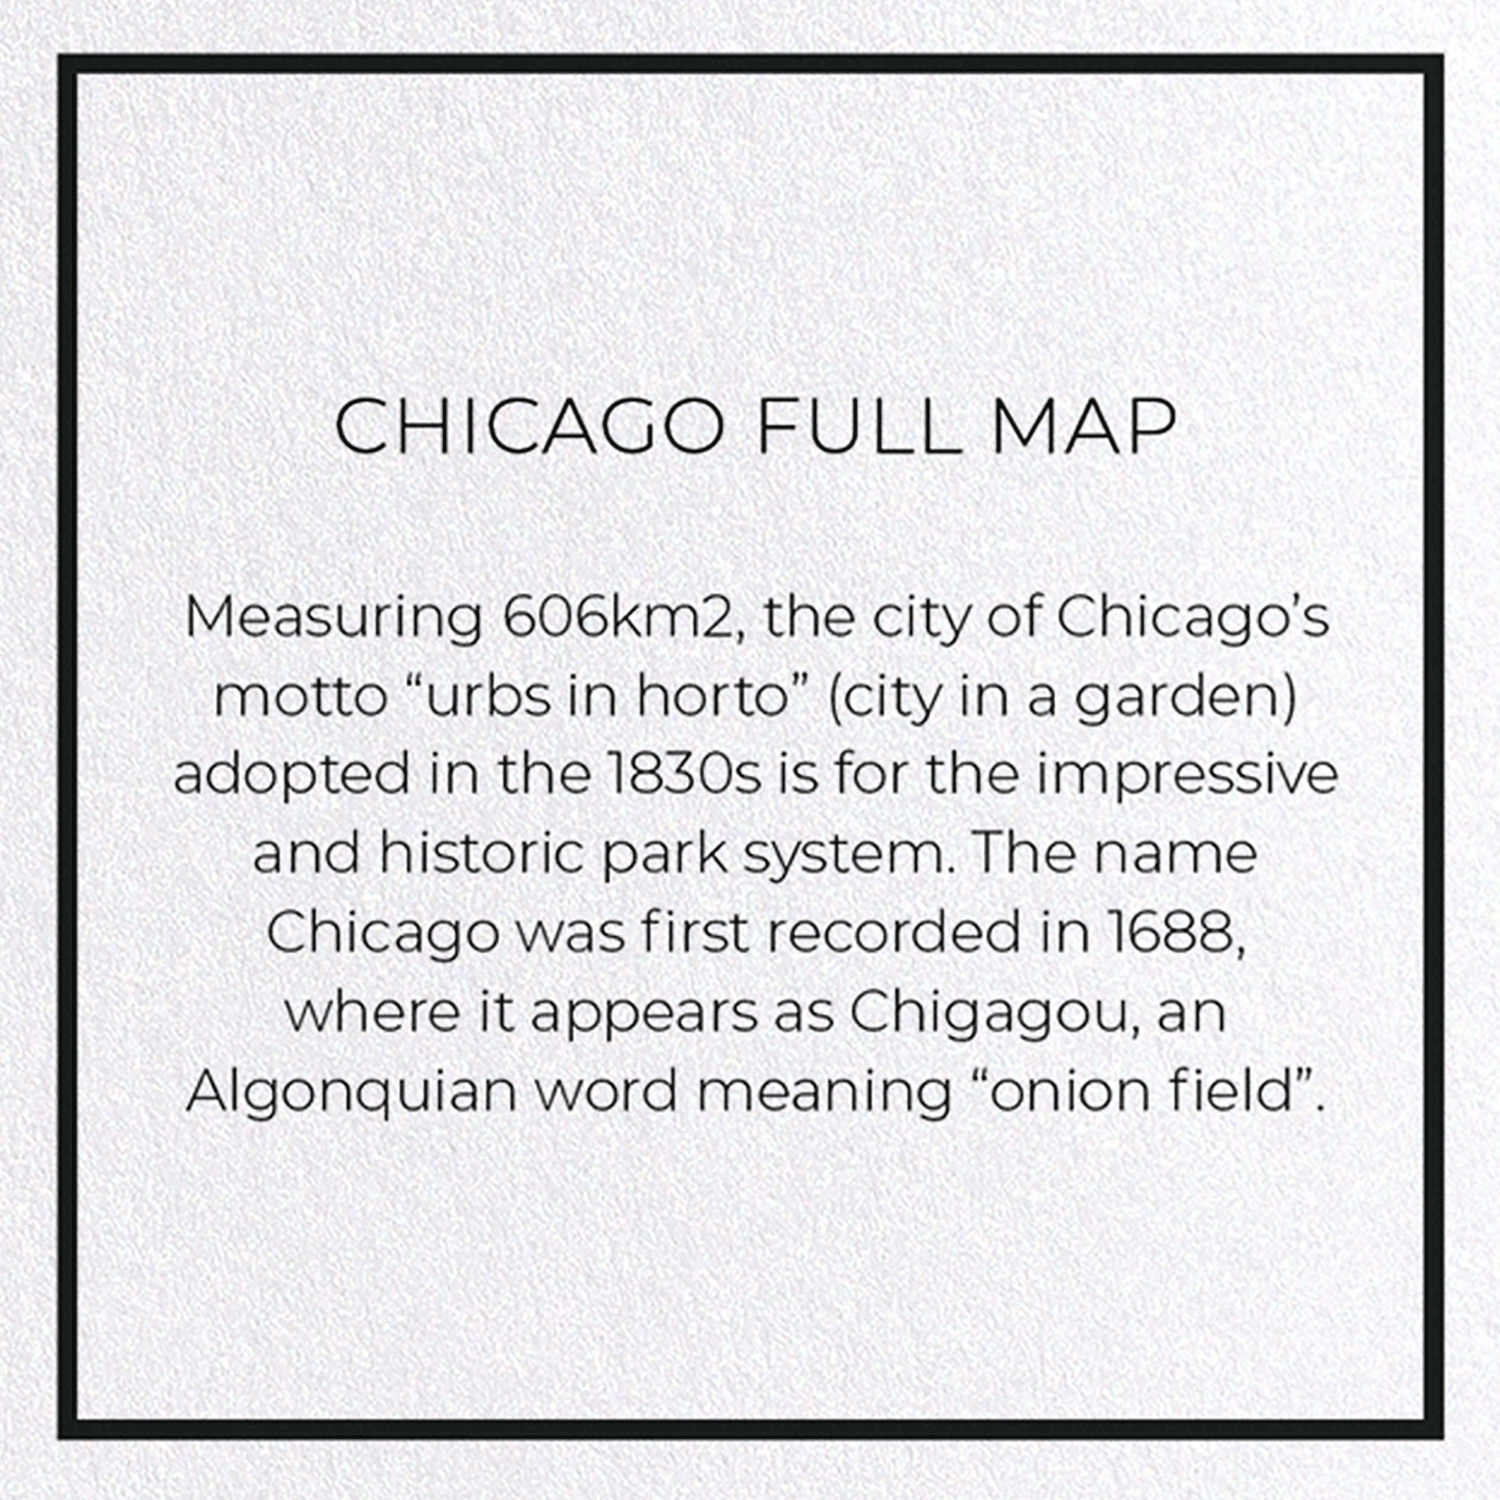 CHICAGO FULL MAP